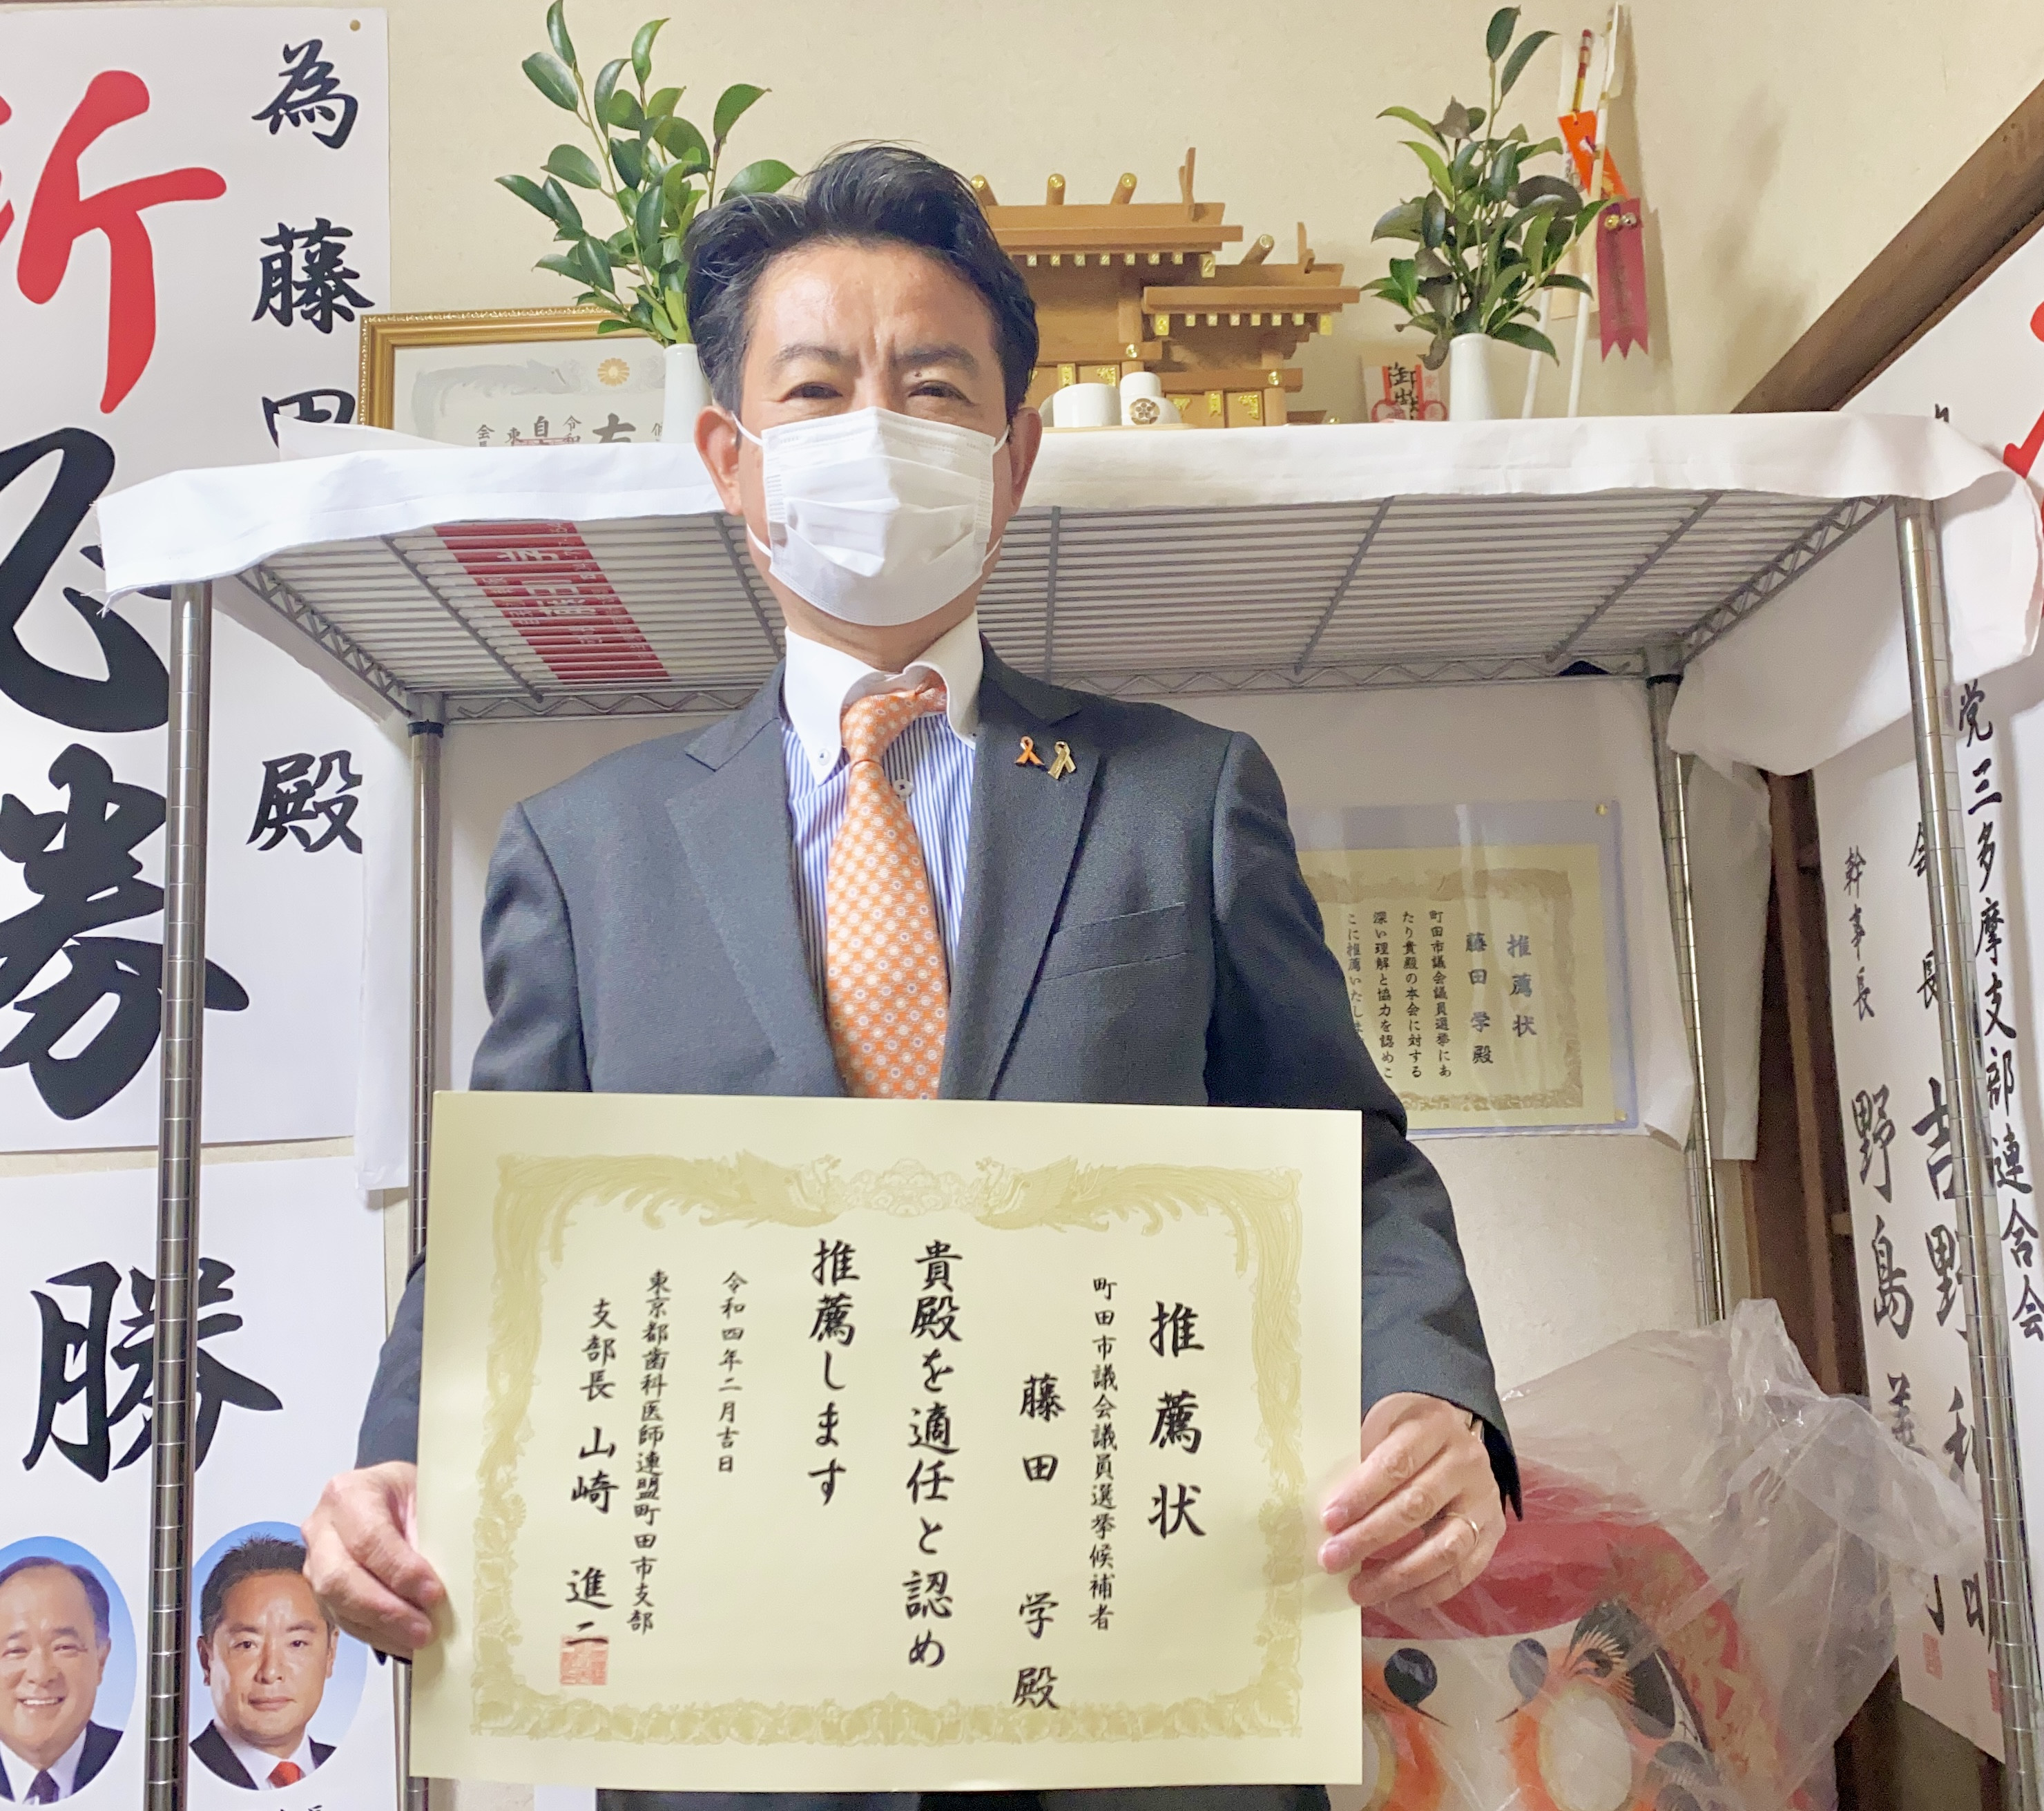 おはようございます。 #東京都歯科医師連盟町田市支部 より、推薦をいただきました。  #町田市の皆様のお口の健康を守ります  #新しい未来 #children_first #自由民主党 #藤田学 #町